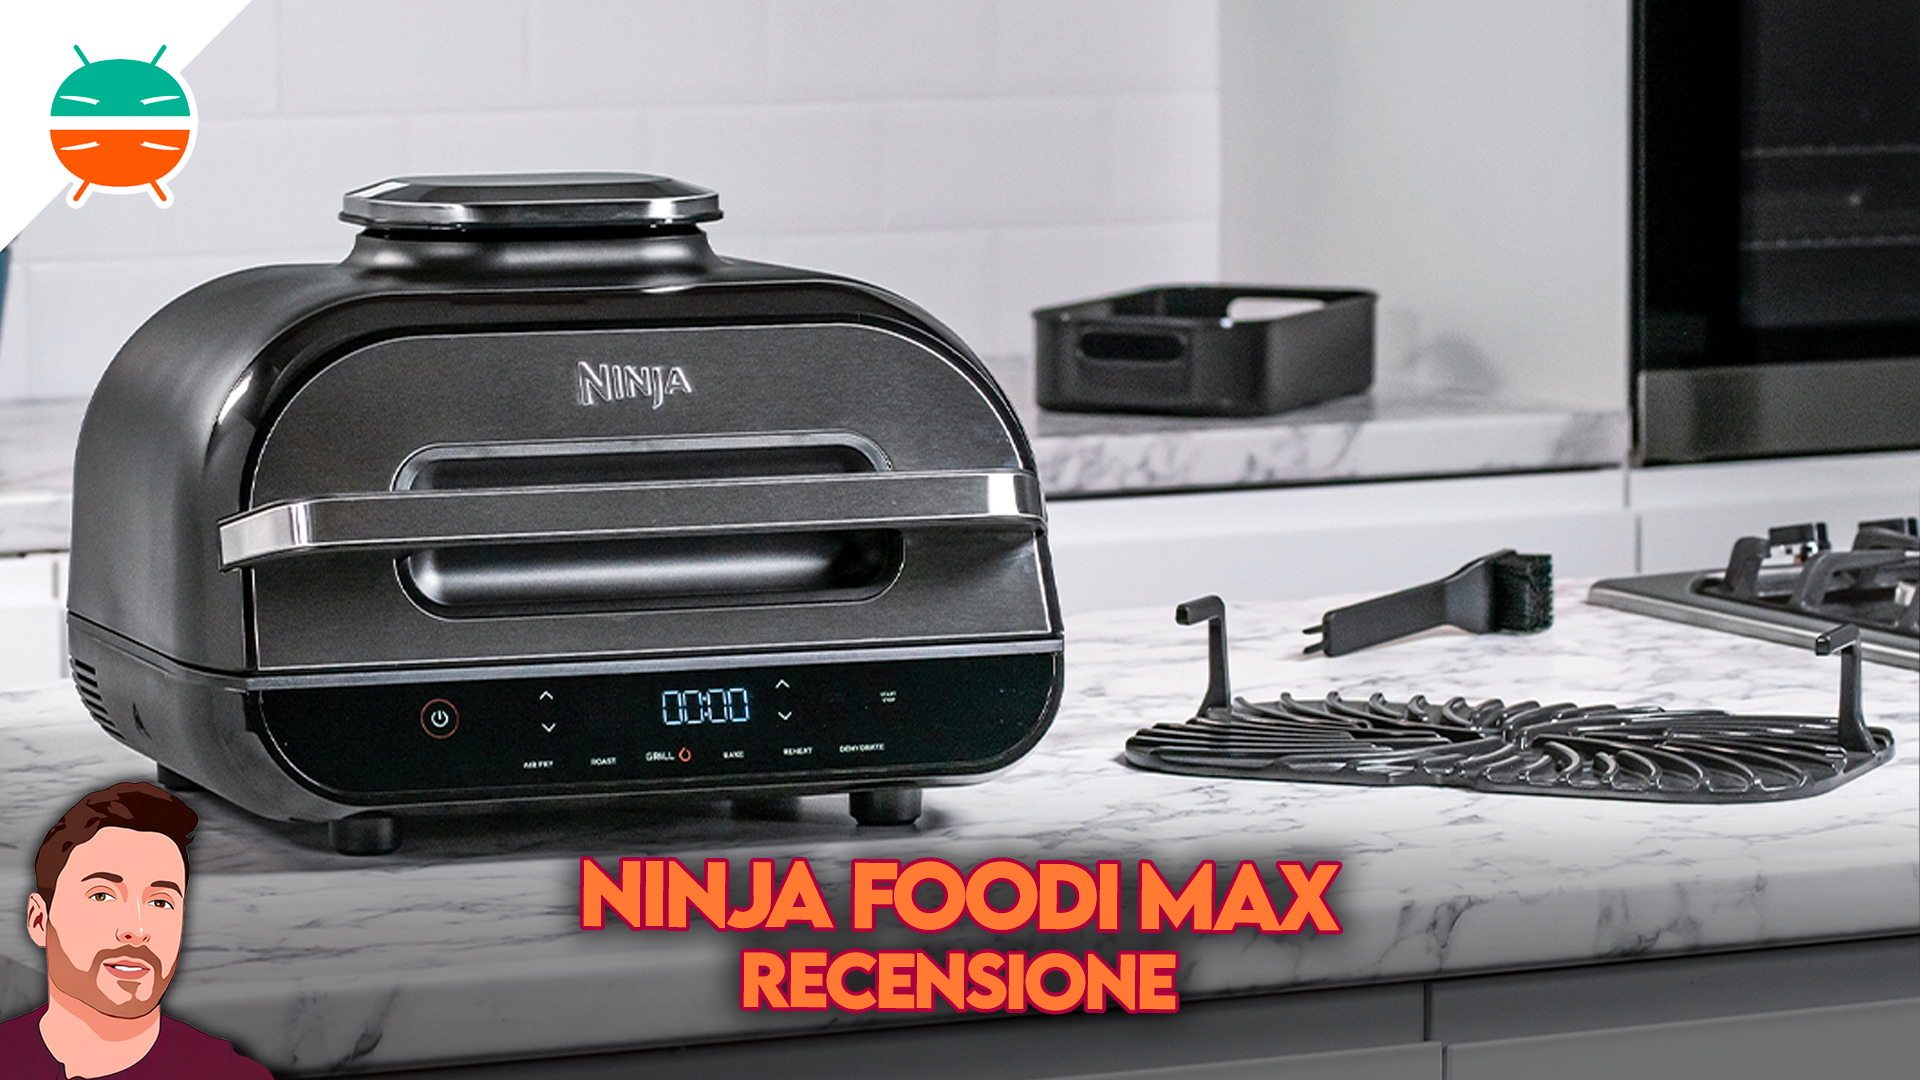 https://gizchina.it/wp-content/uploads/2022/09/Recensione-Shark-Ninja-Foodi-Max-friggitrice-elettrica-carne-pesce-verdure-arrosto-automatico-sensore-cottura-ricette-caratteristiche-prezzo-coupon-sconto-amazon-italia-copertina.jpg